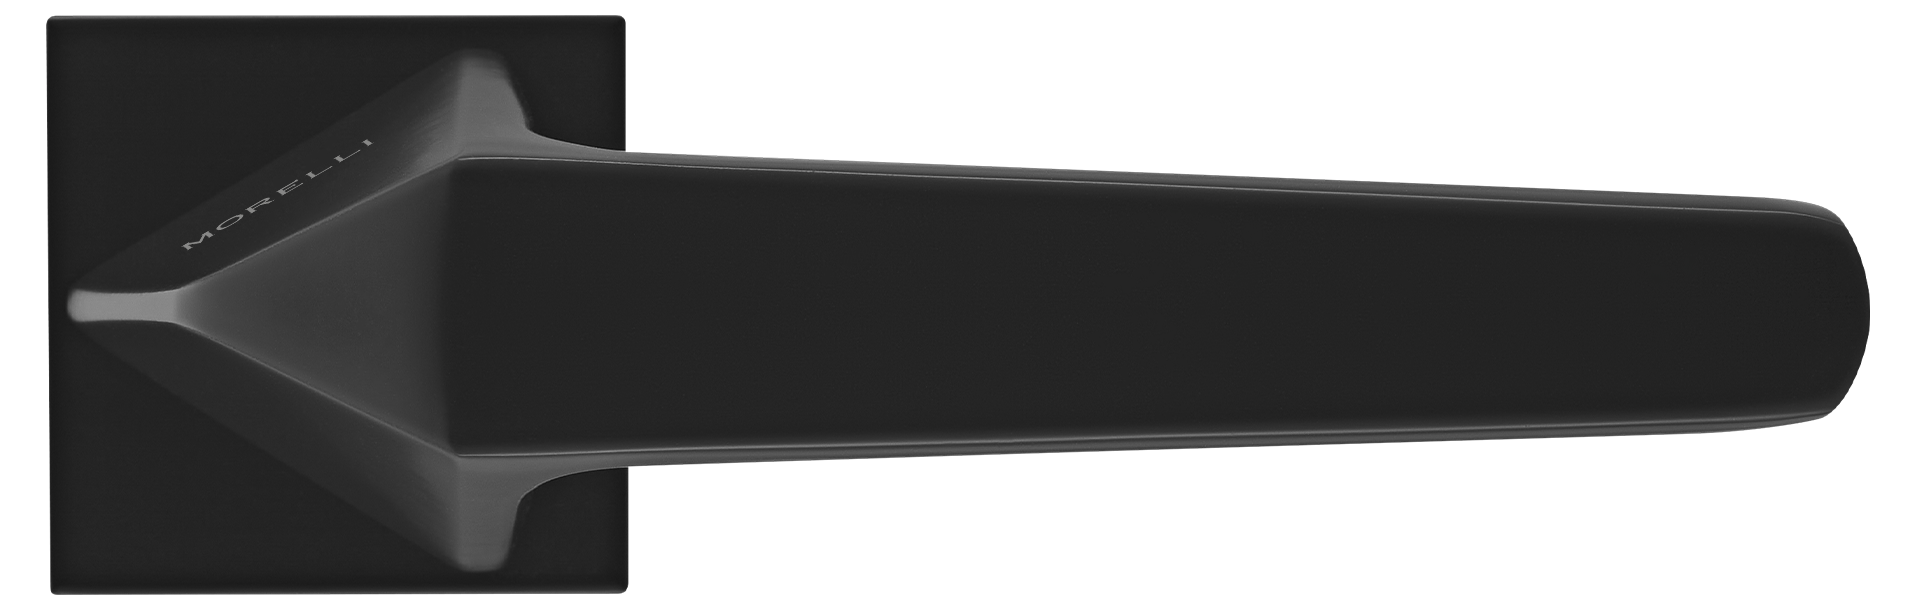 SOUK ручка дверная на квадратной розетке 6 мм, MH-55-S6 BL, цвет - черный фото купить в Пензе